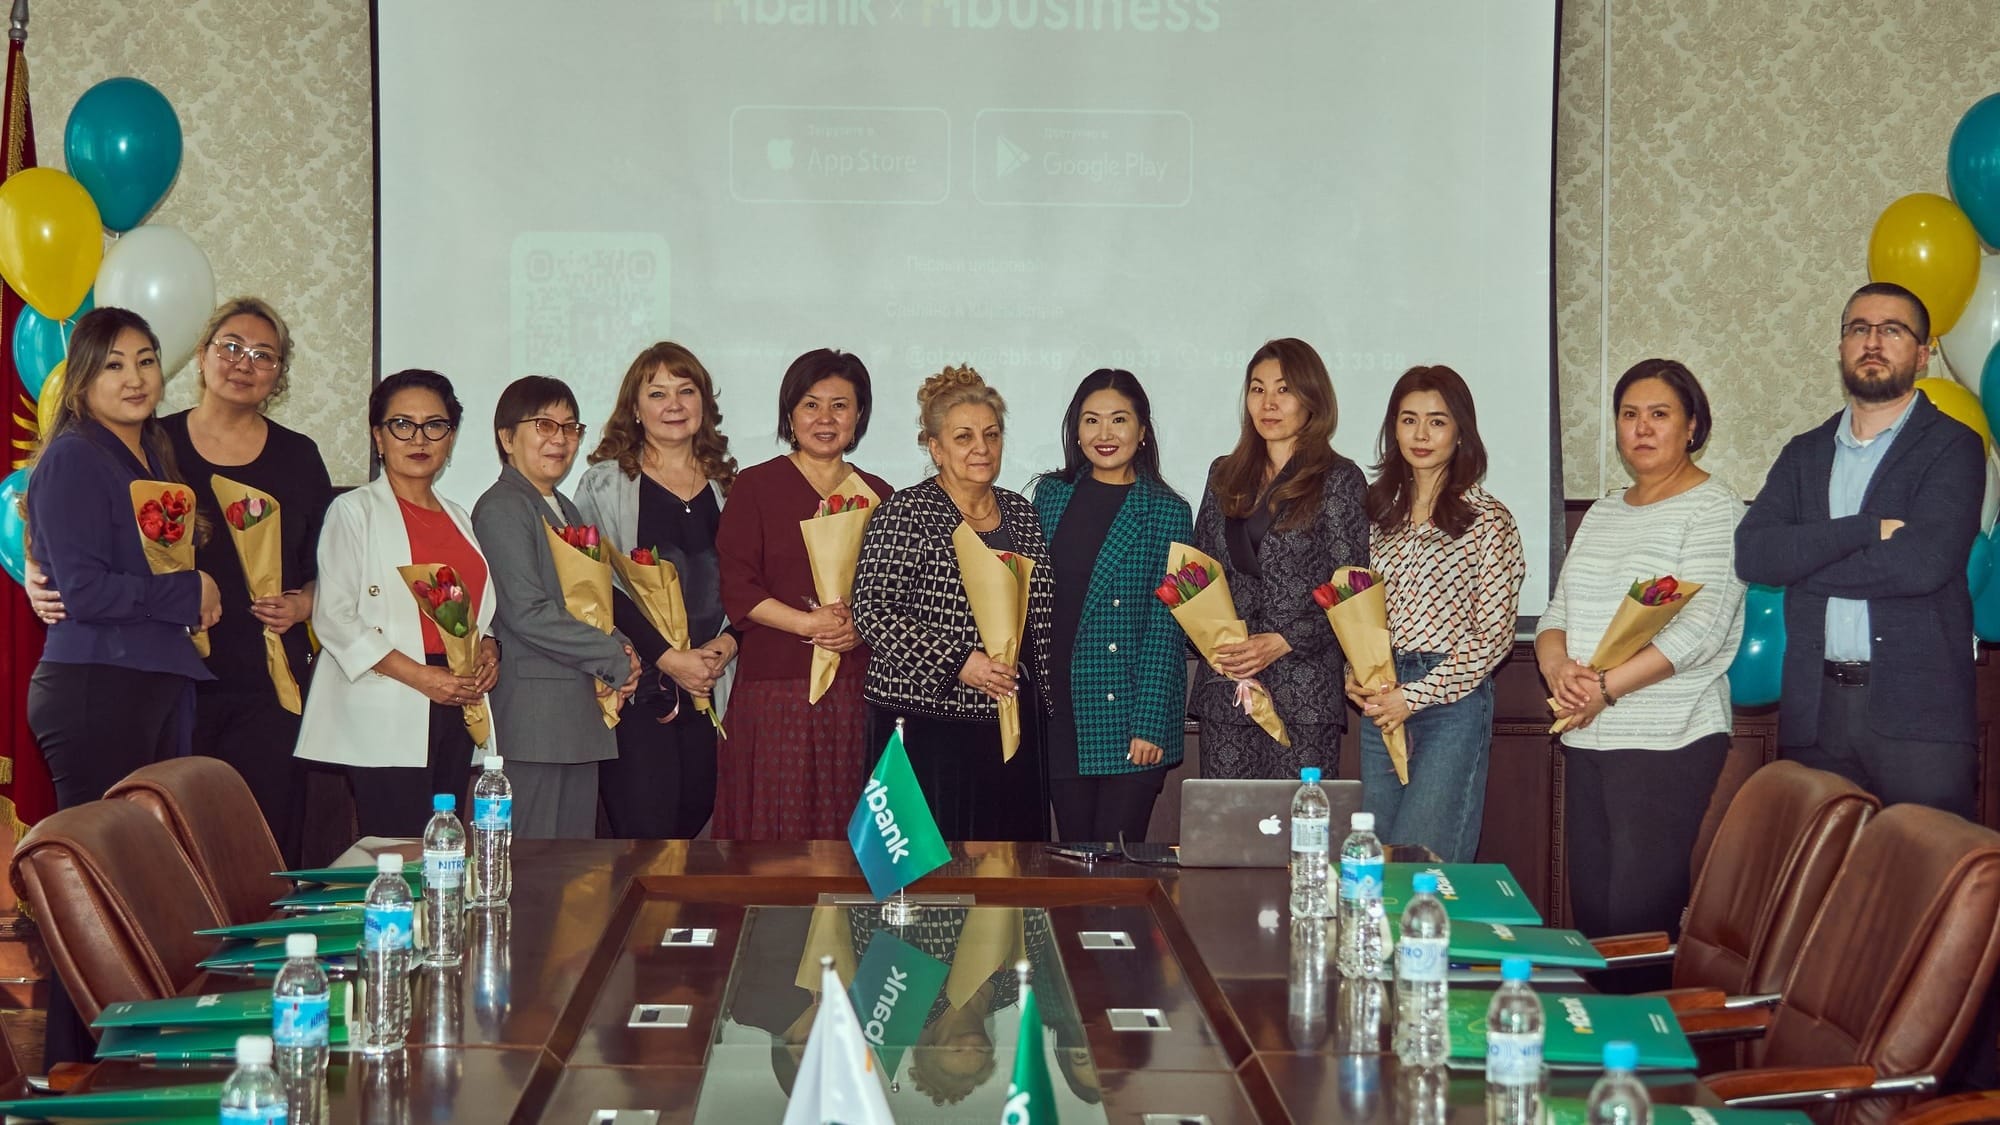 MBANK поздравил женщин-предпринимательниц и презентовал программы и сервисы для поддержки женщин в КР